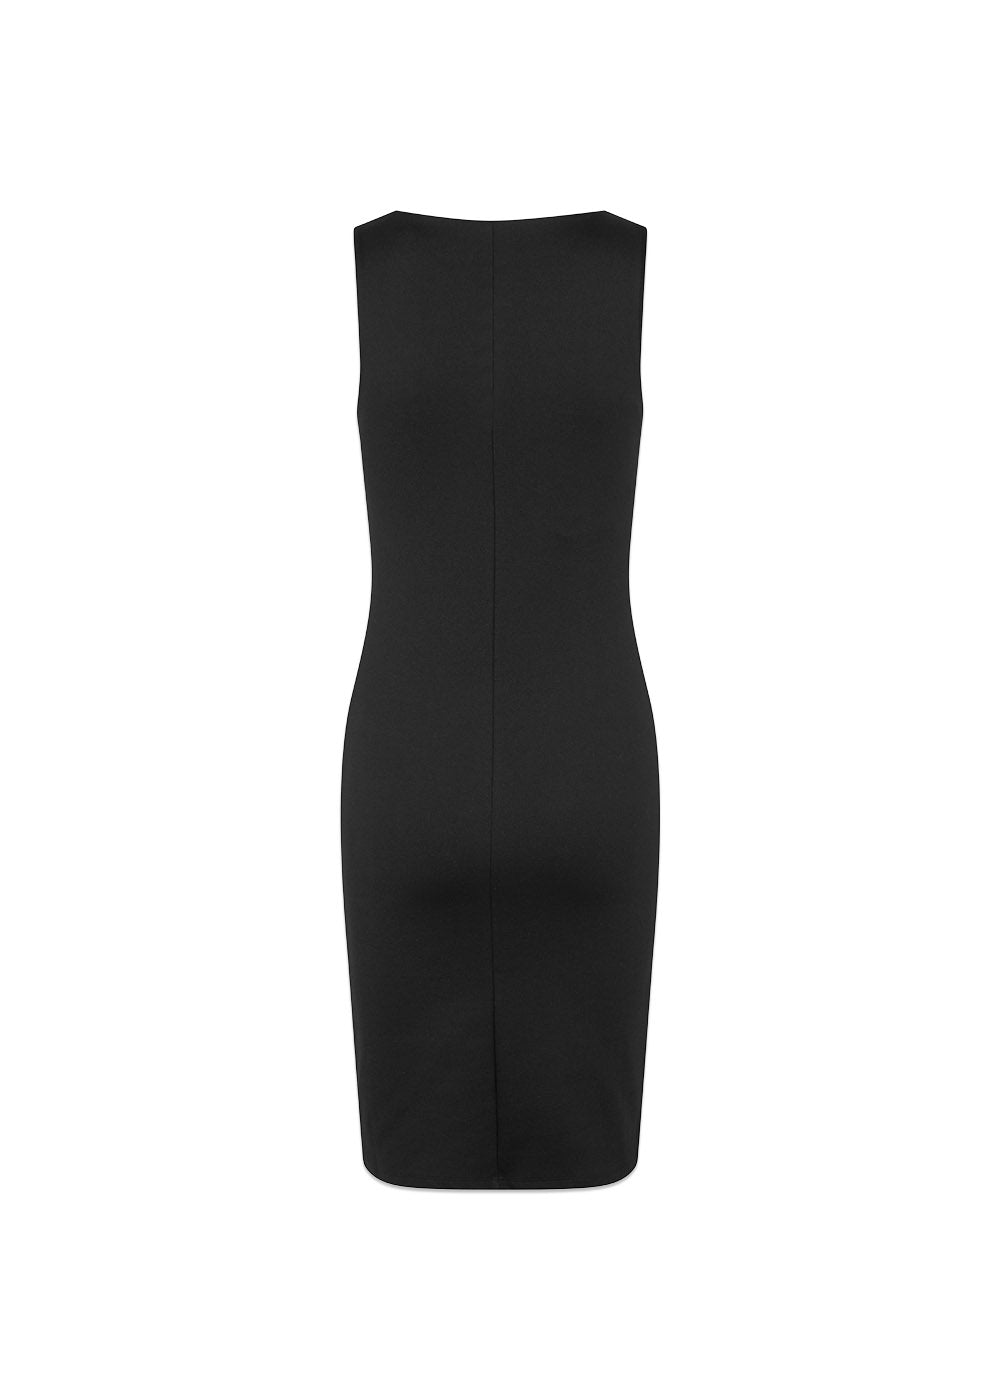 Modströms HakanMD dress - Black. Køb kjoler her.